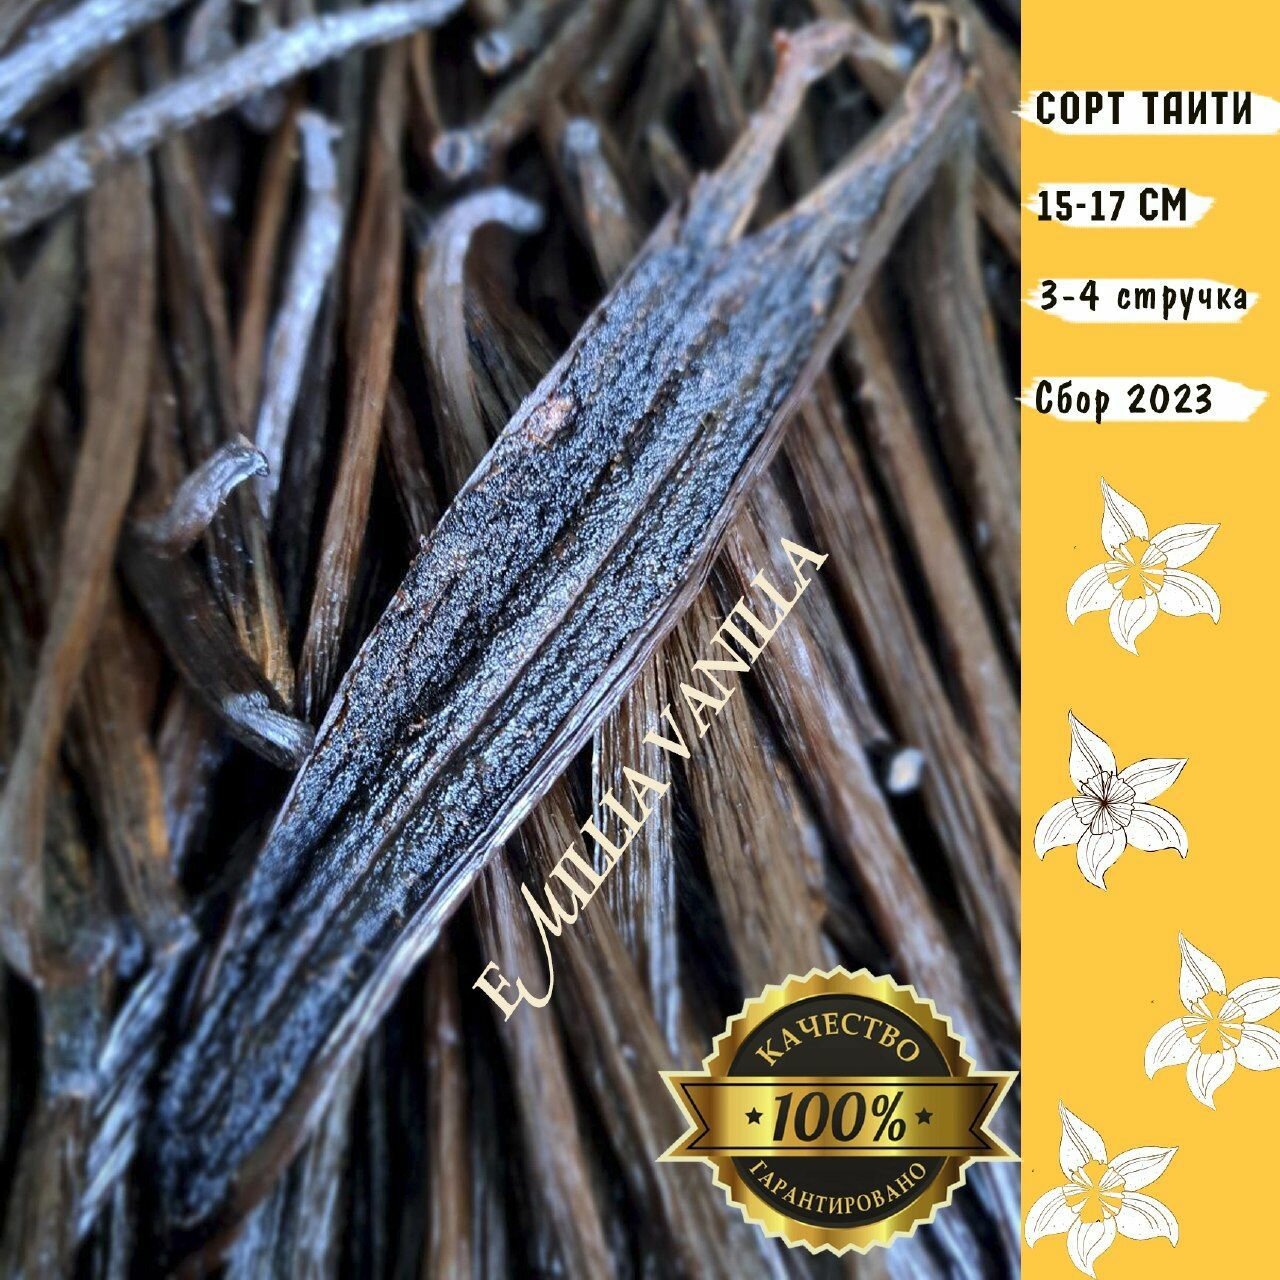 Ваниль в стручках сорт Tahiti Таити натуральная,10 гр, 3-4 стручка 15-17 см.